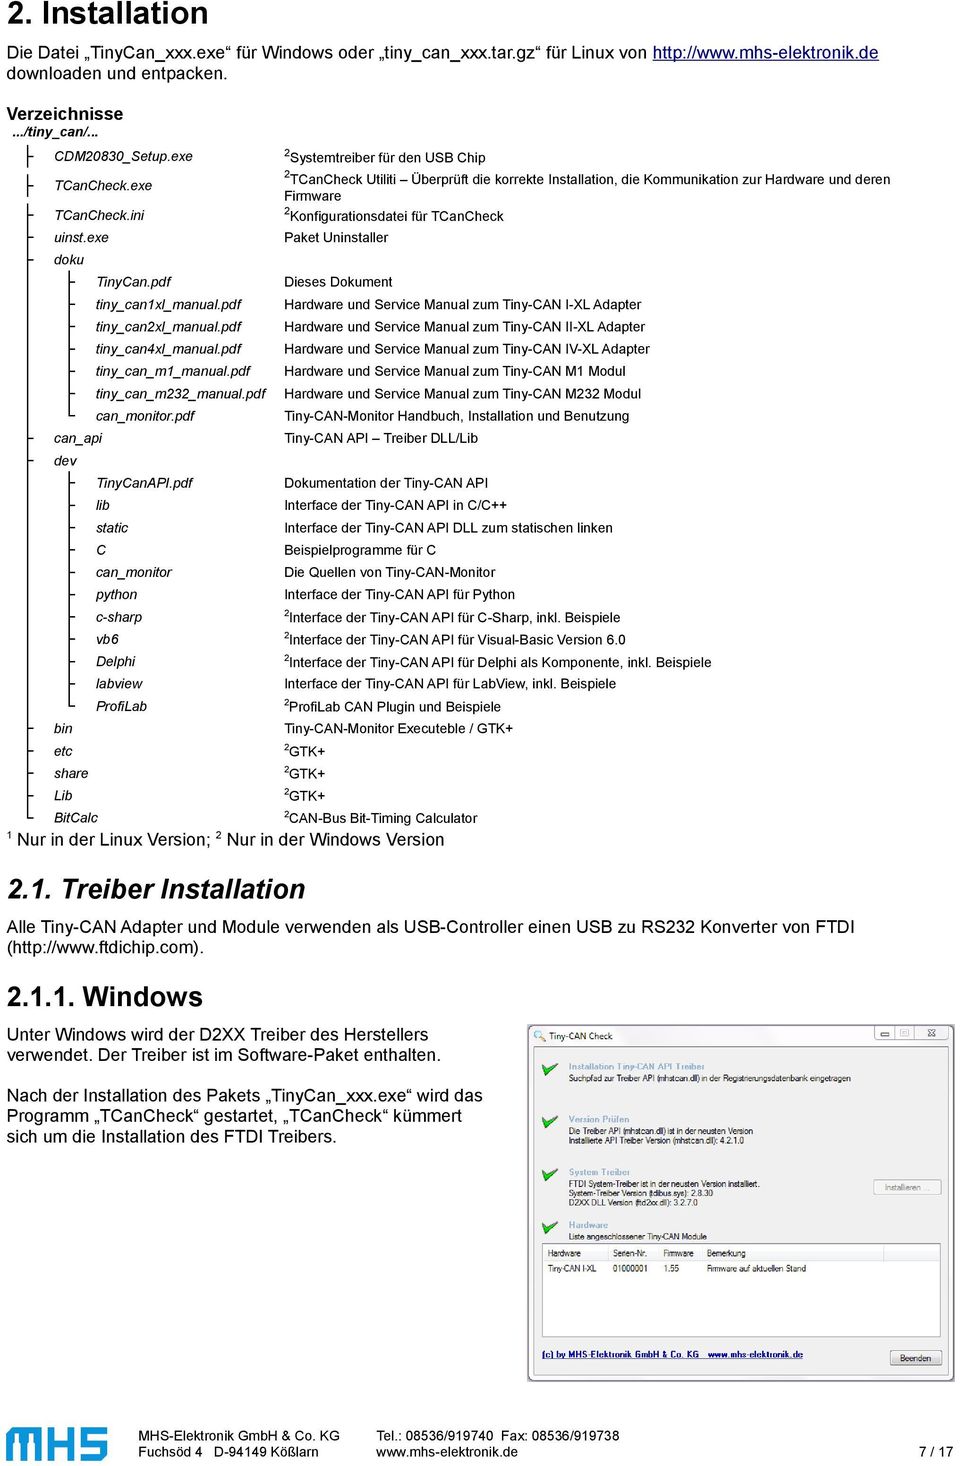 exe Paket Uninstaller TCanCheck.exe doku TinyCan.pdf Dieses Dokument tiny_can1xl_manual.pdf Hardware und Service Manual zum Tiny-CAN I-XL Adapter tiny_canxl_manual.